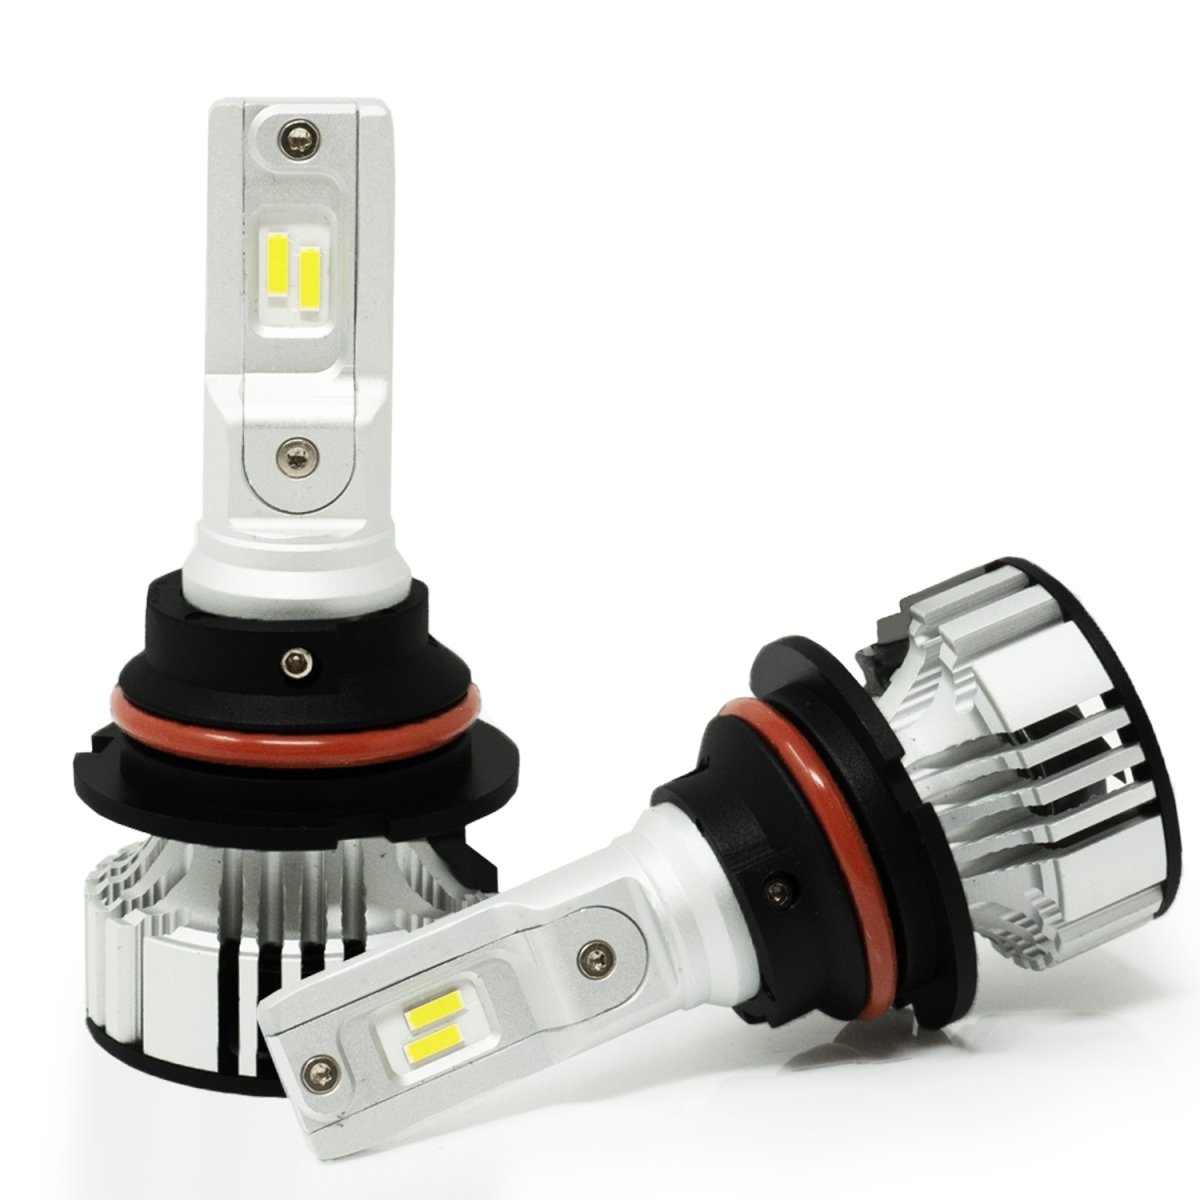 D-CR HB5 9007 LED Bulb Forward Lighting/Daytime Running Lights -Alla Lighting